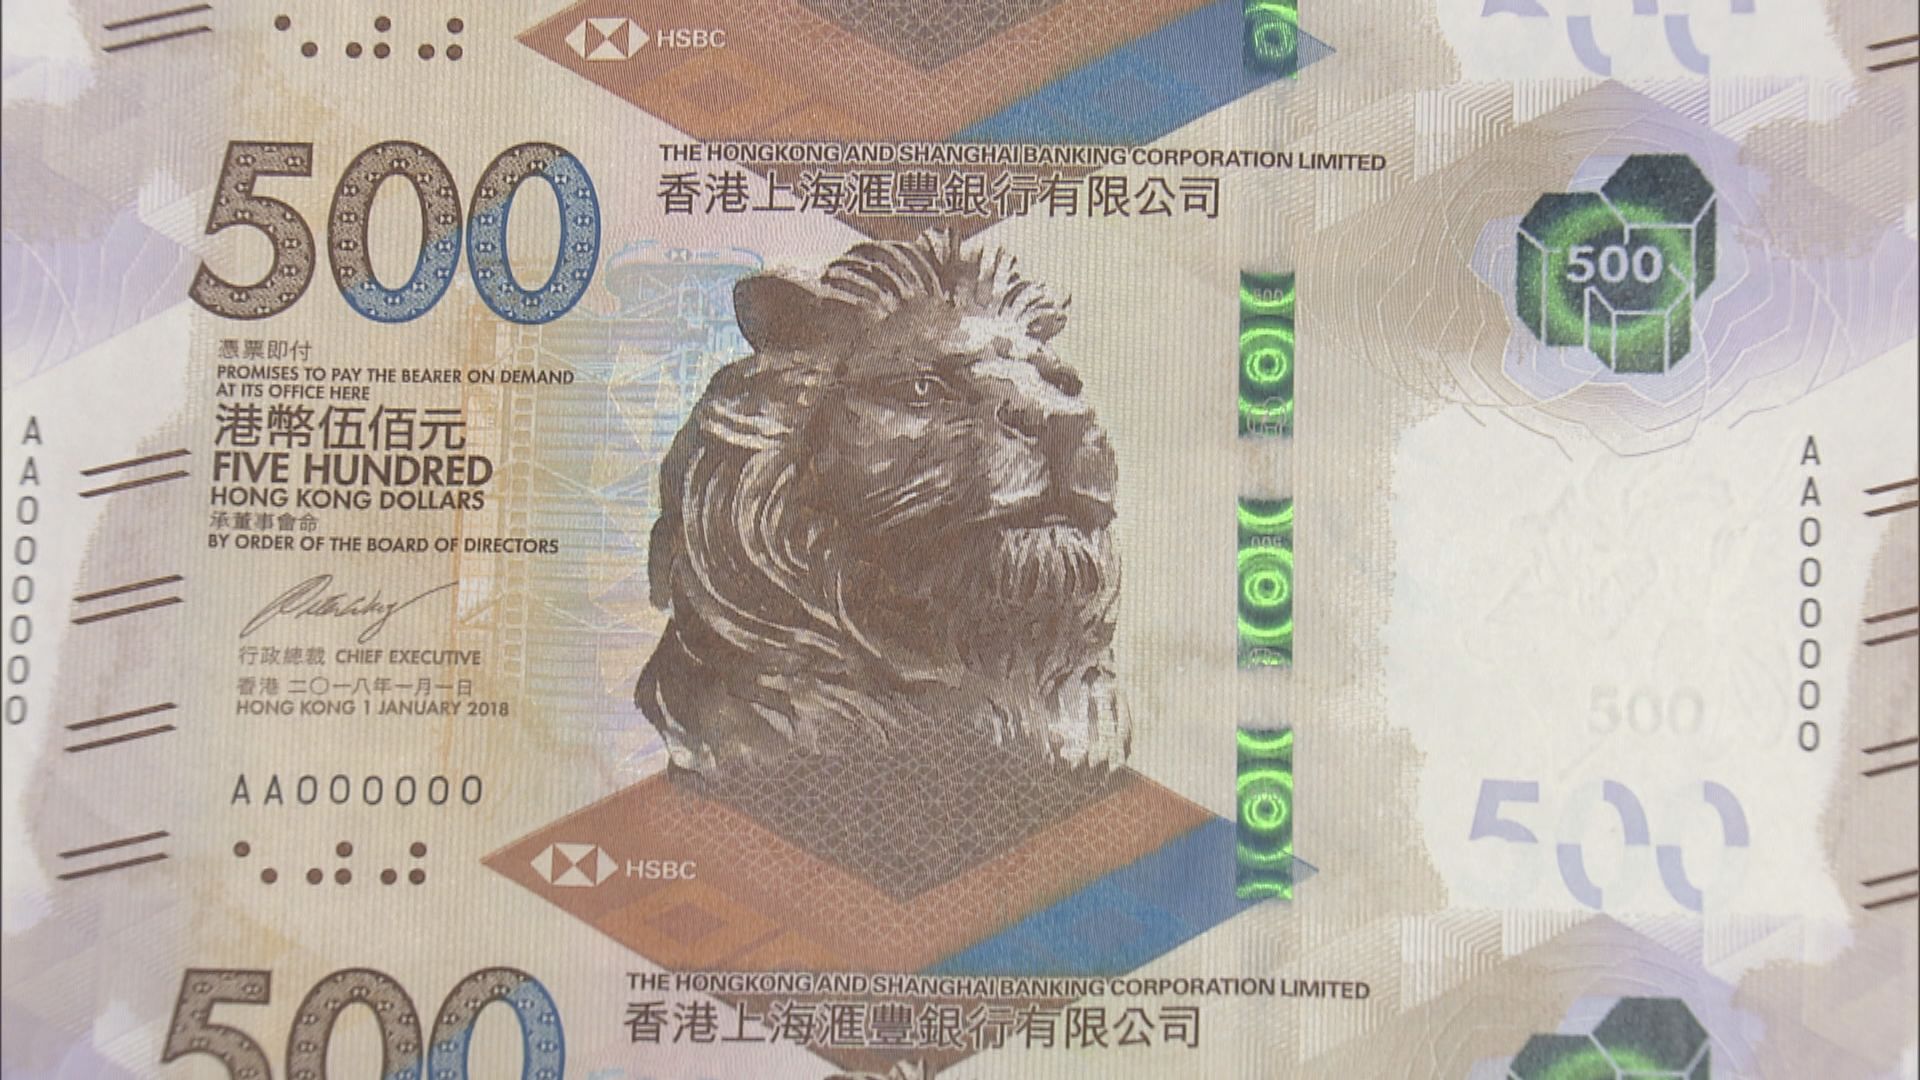 三發鈔銀行本月23日起提供新鈔兌換